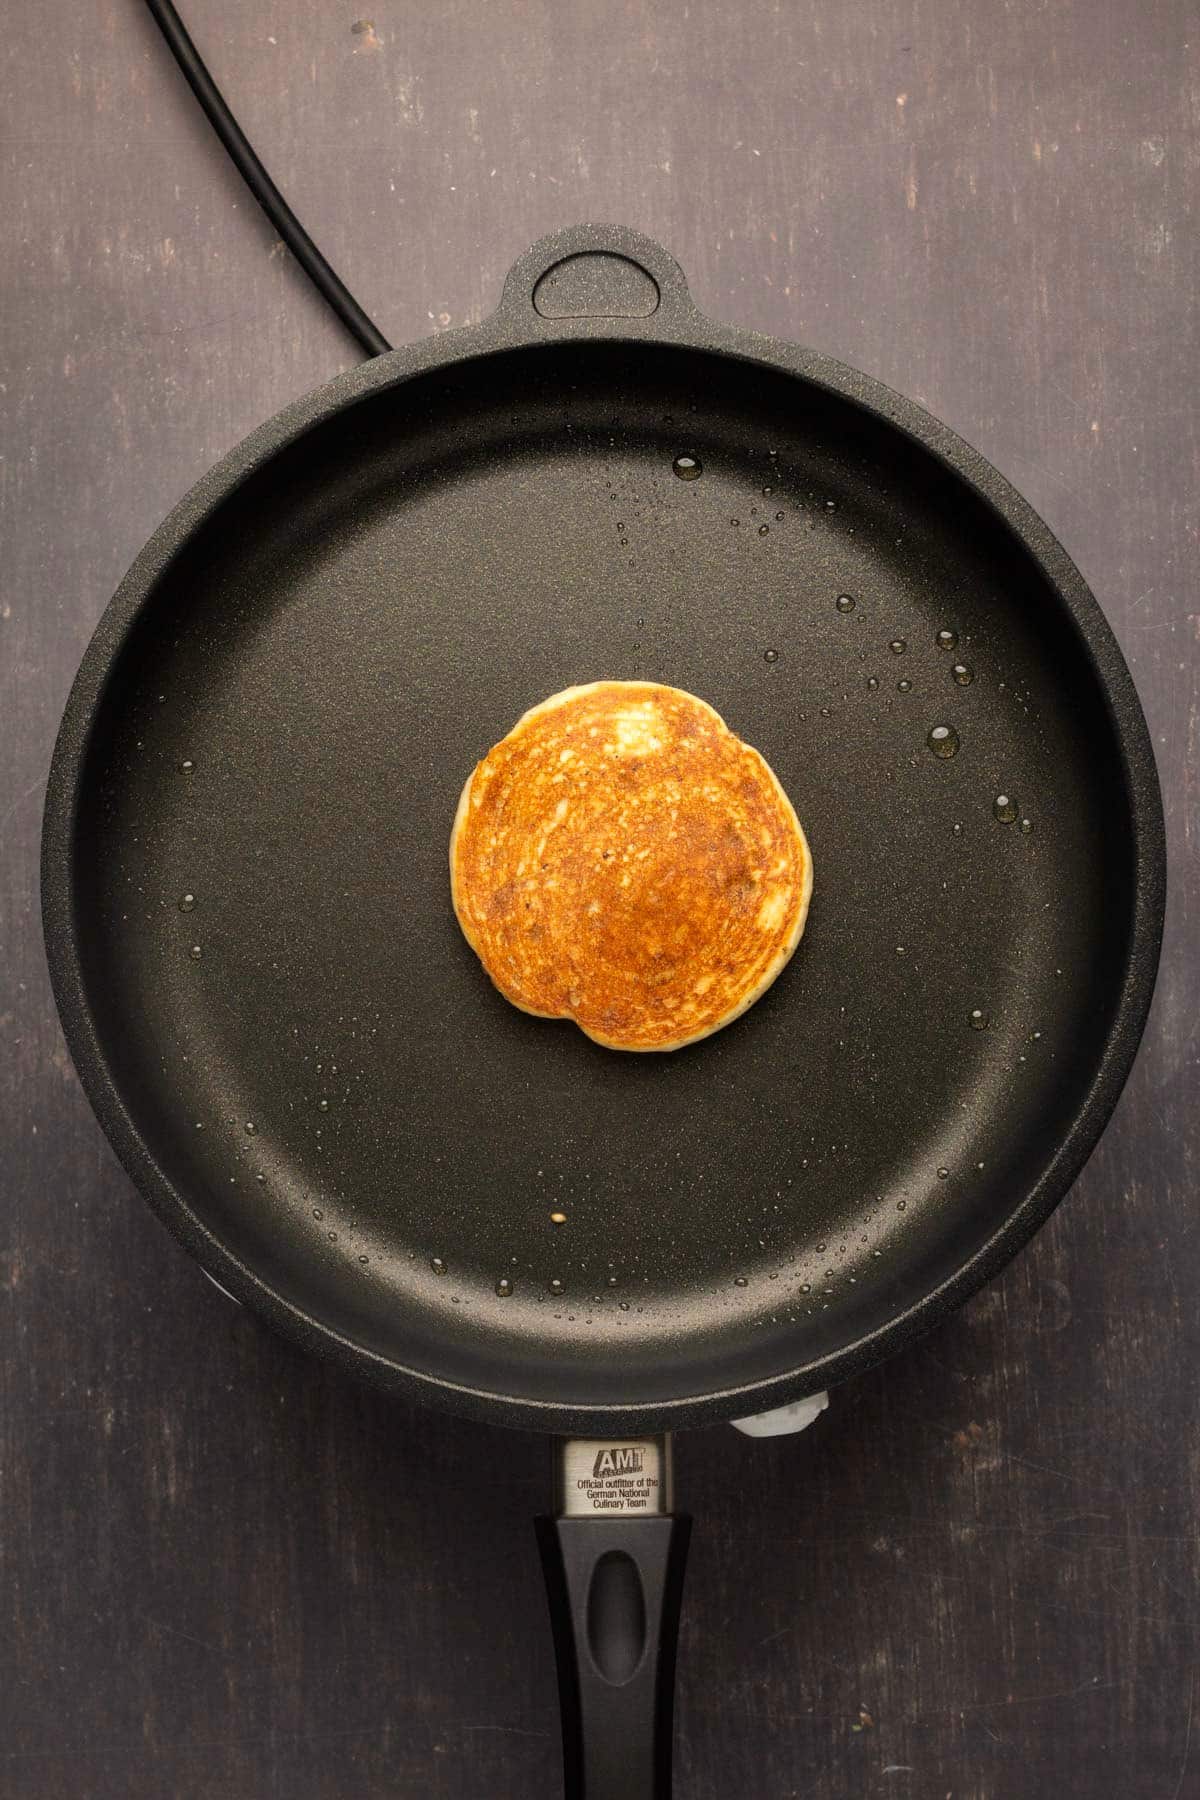 Flipped pancake in a frying pan.